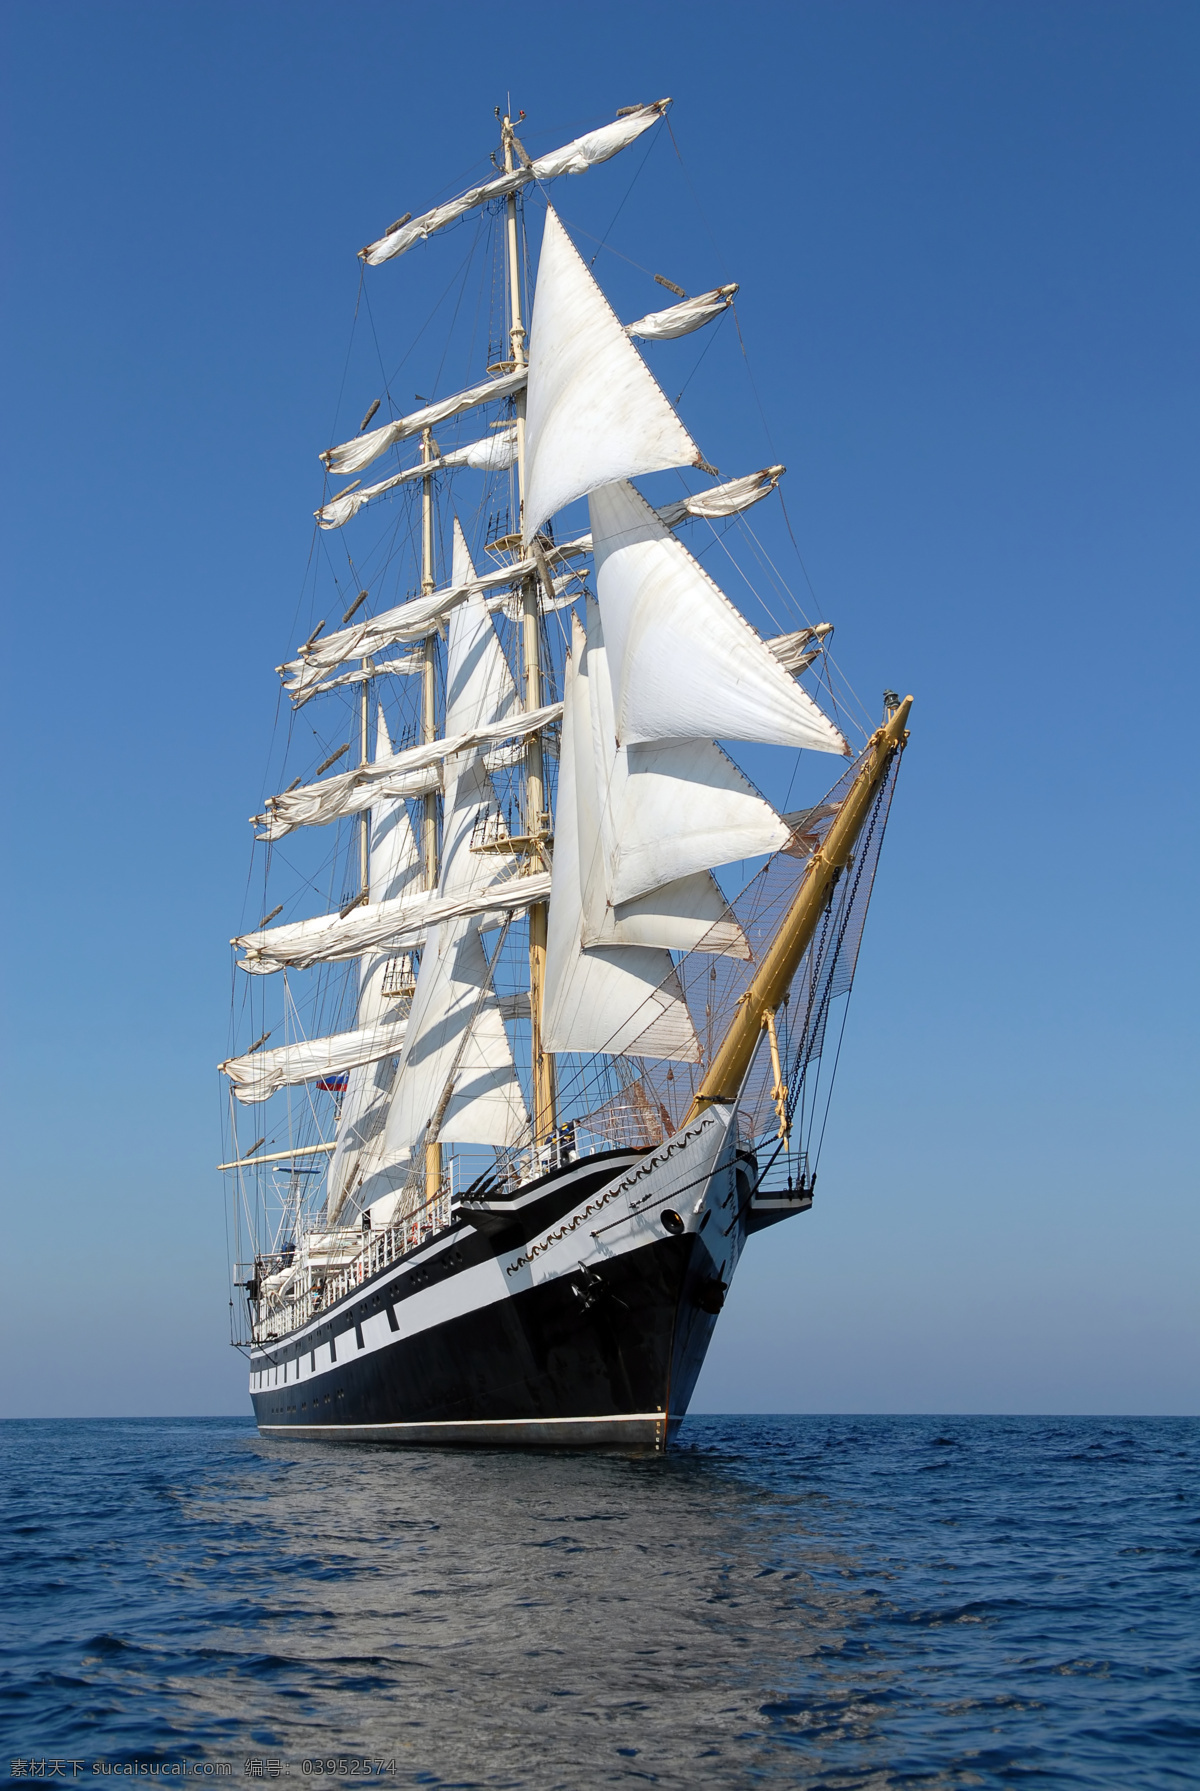 帆船 小船 大船 船只 风帆 航海 航行 远航 大海 海洋 渔船 古代船只 名车 交通工具 现代科技